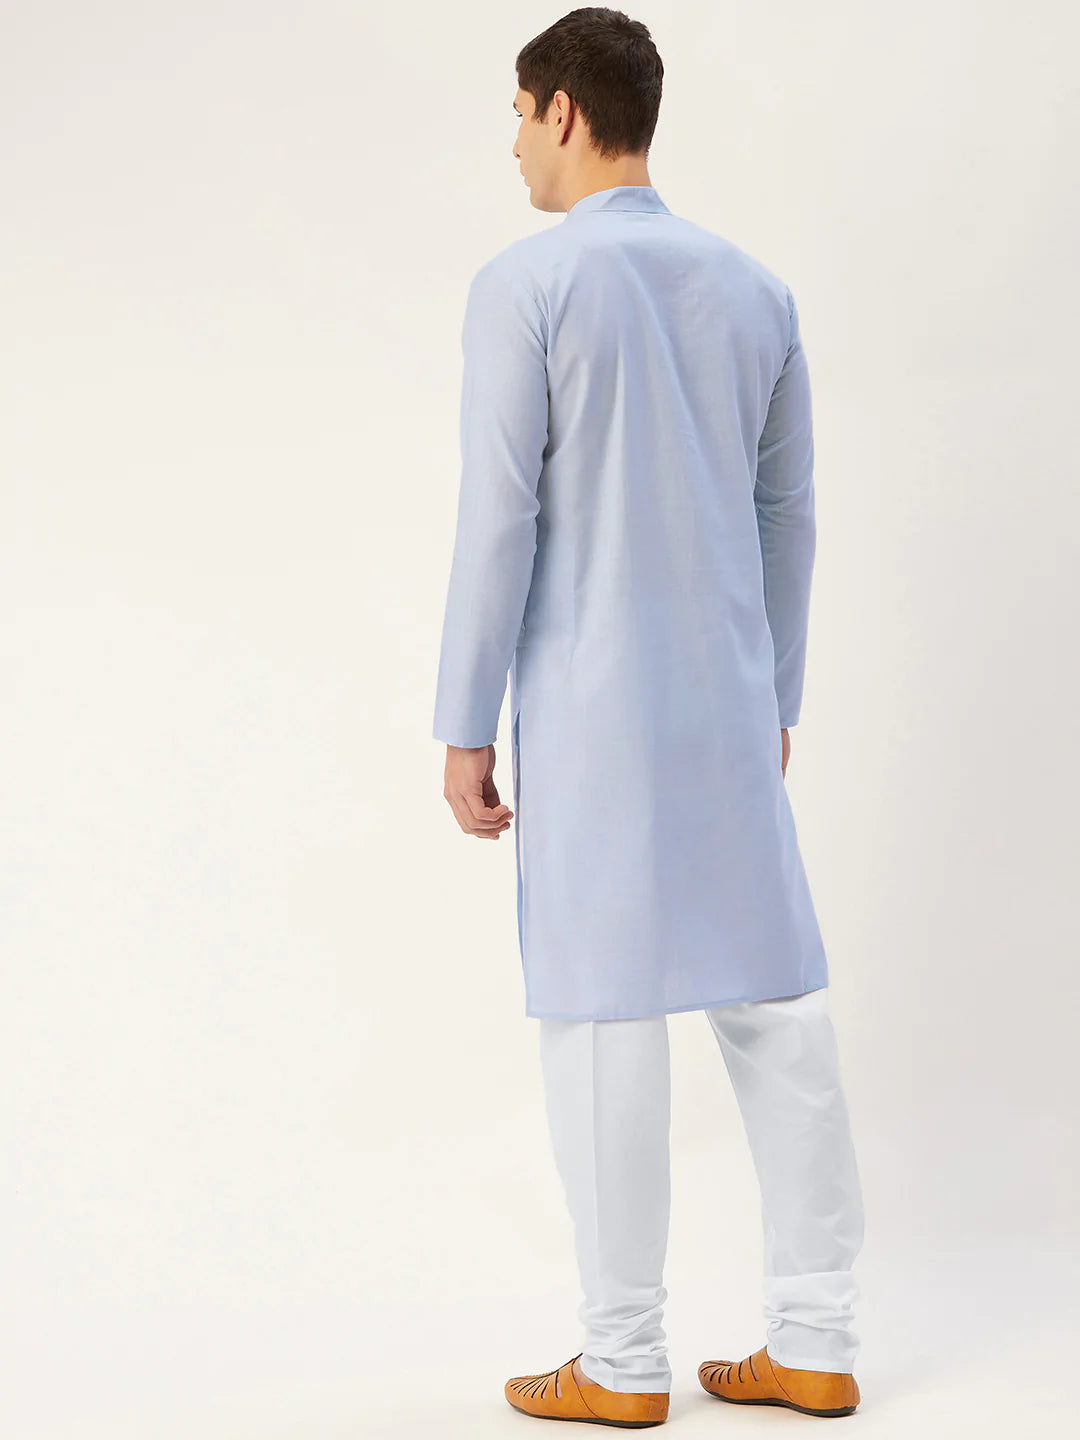 Jompers Men's Blue Cotton Solid Kurta Pyjama ( JOKP 532 Blue )